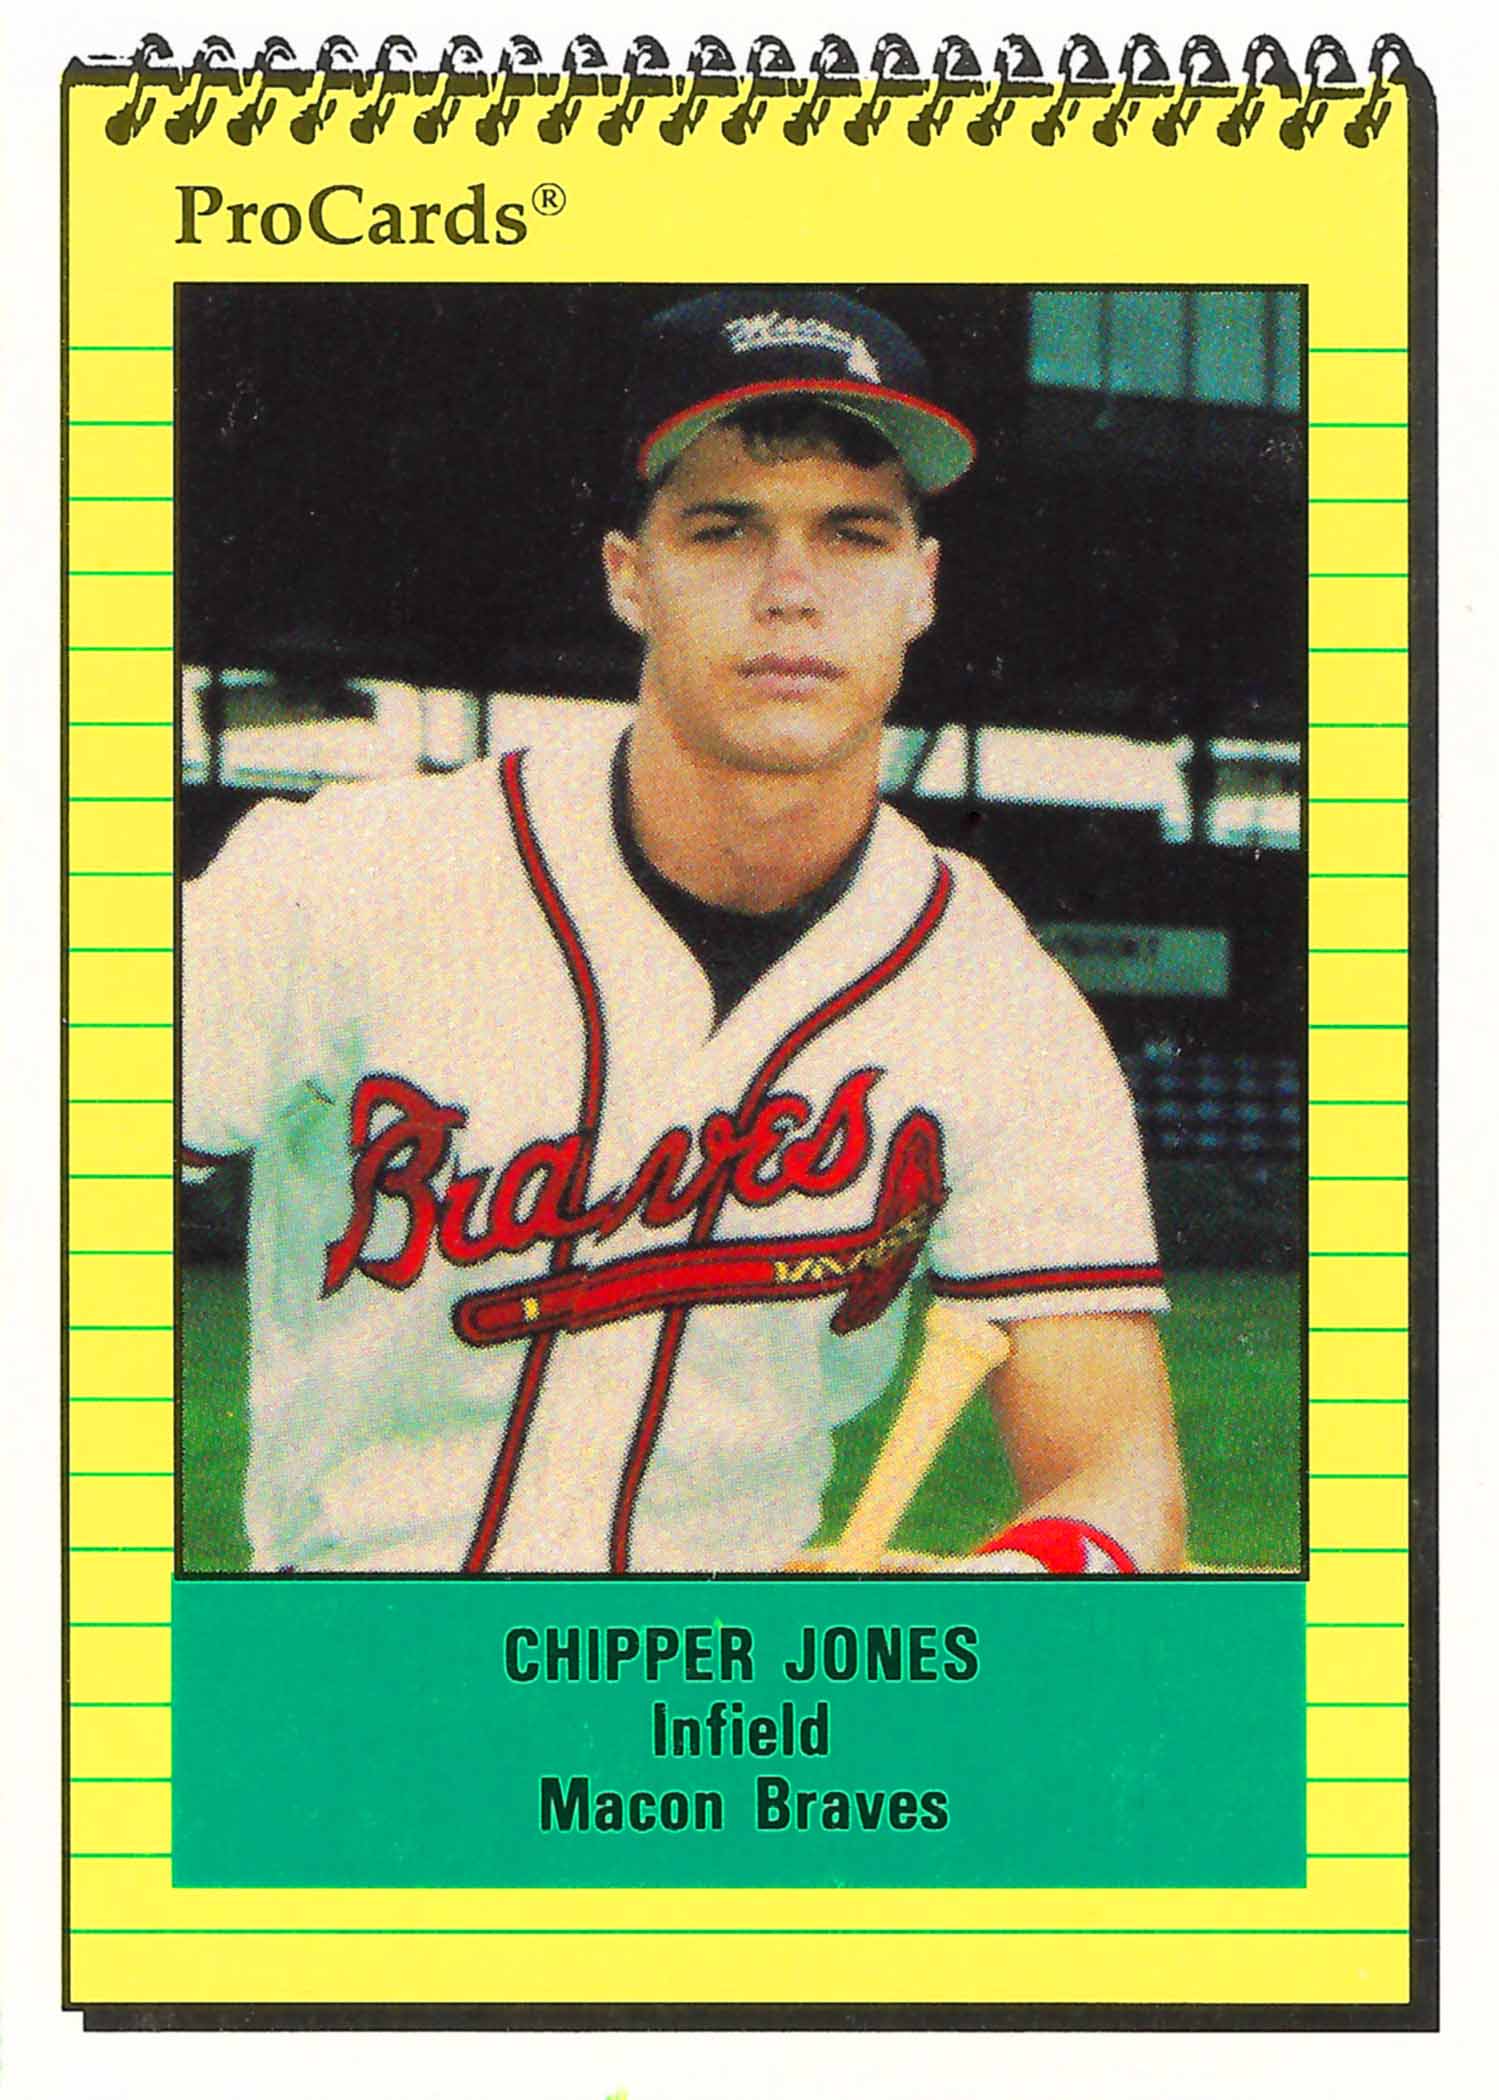 Chipper Jones Gallery